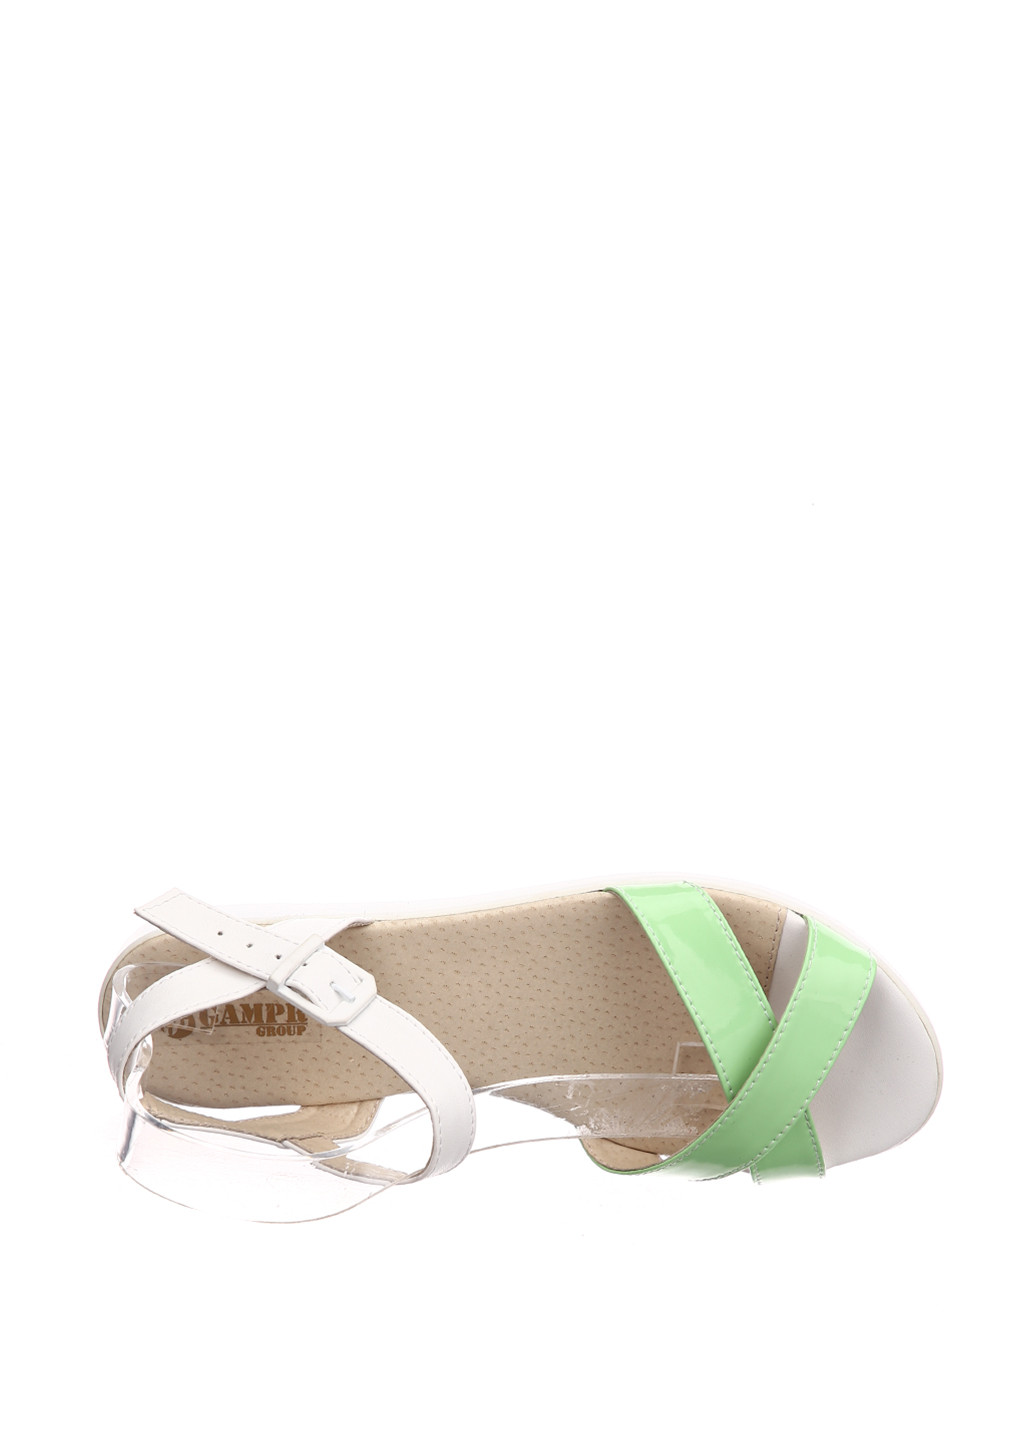 Светло-зеленые босоножки Gampr с ремешком с белой подошвой, лаковые